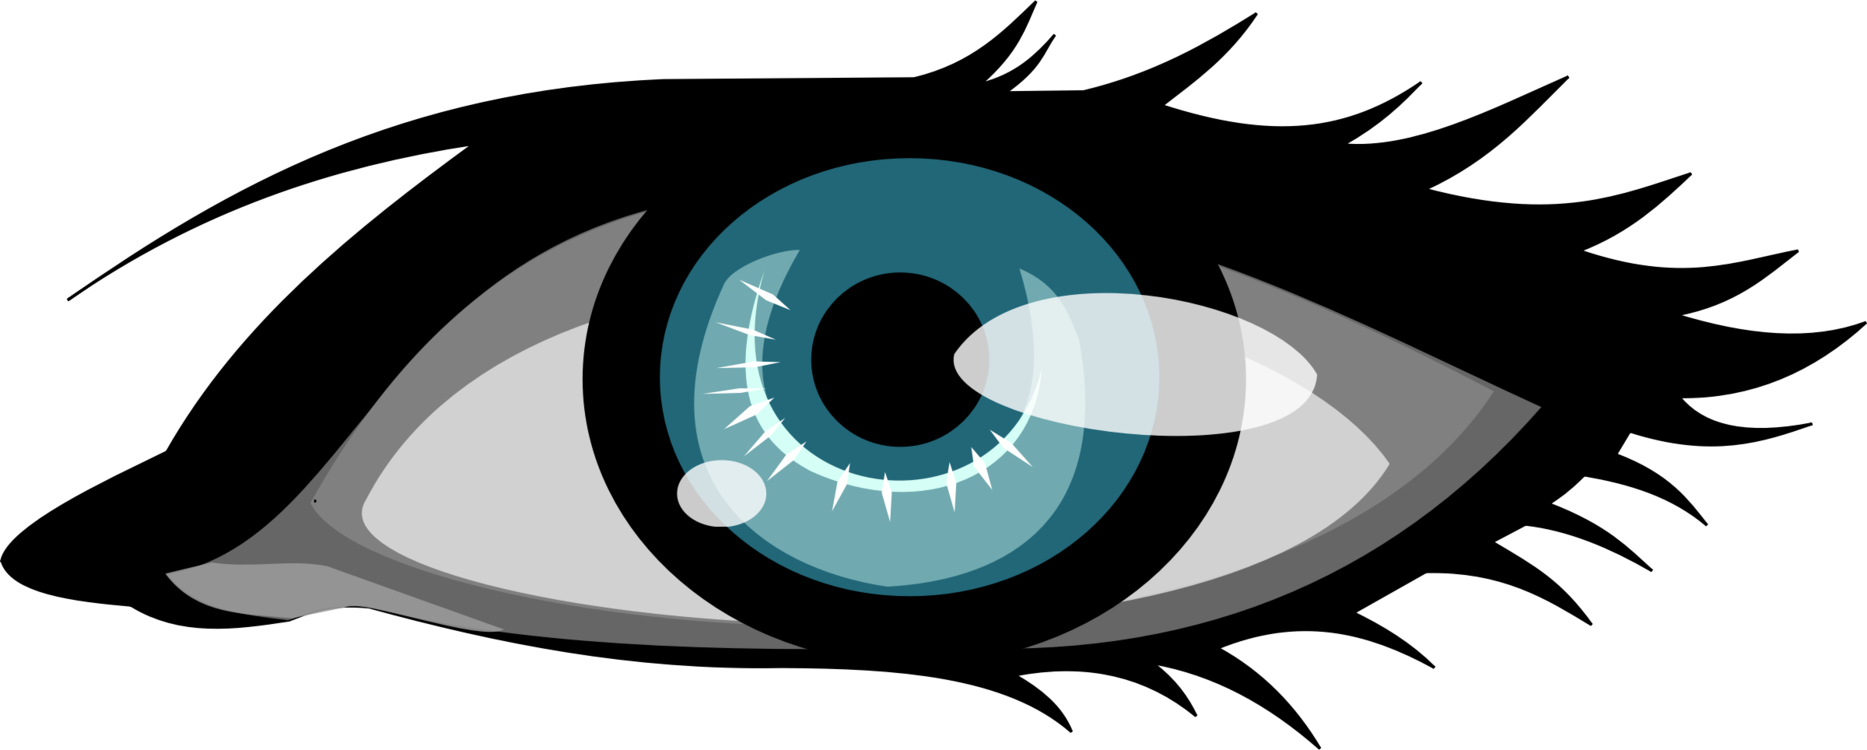 Eye,Organ,Symbol